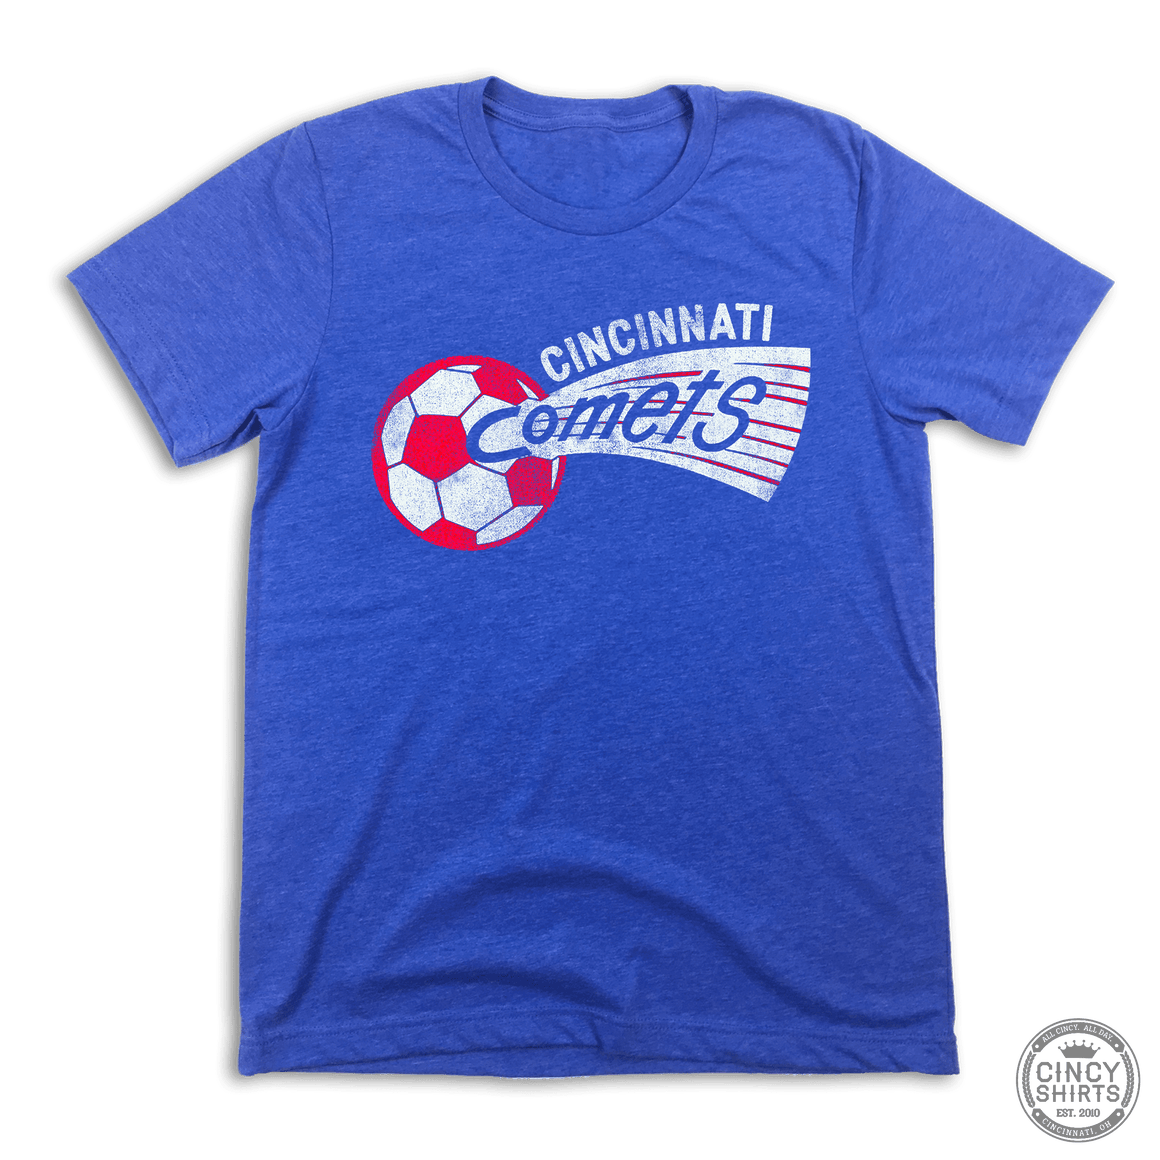 Cincinnati Comets - Cincy Shirts